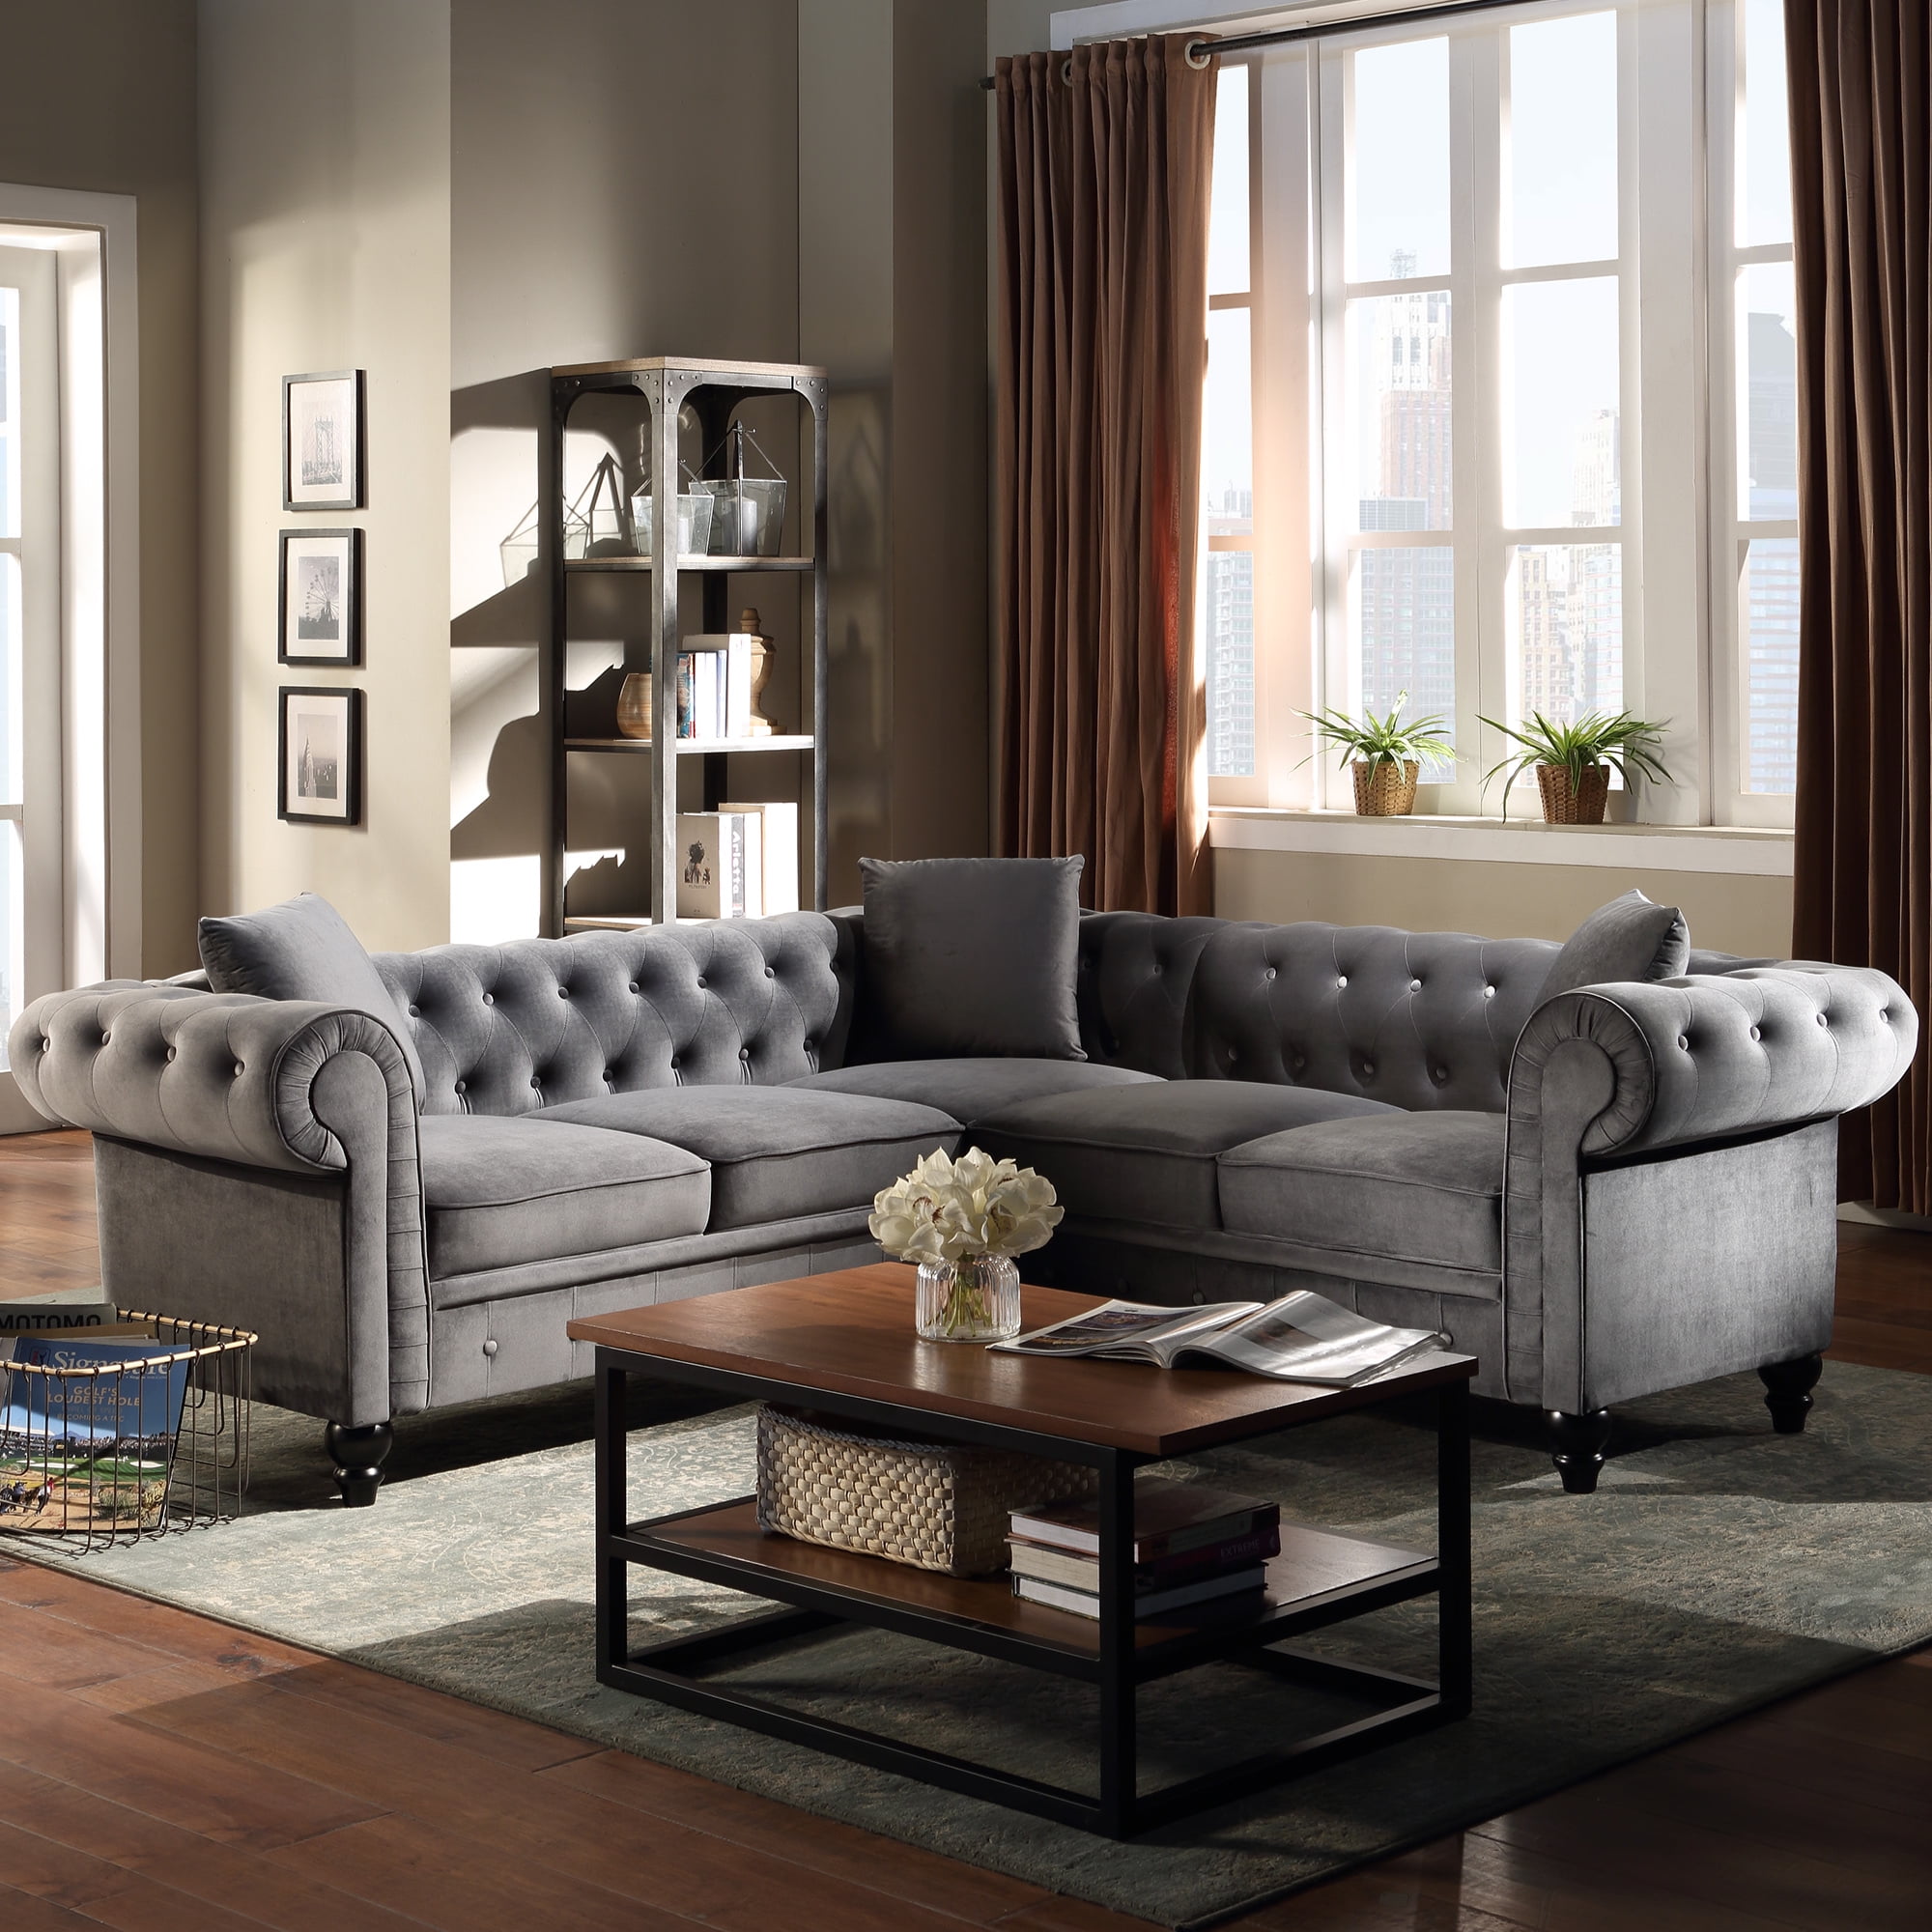 Living Room L-Shape Sofa,Tufted Velvet Upholstered Rolled Arm Classic